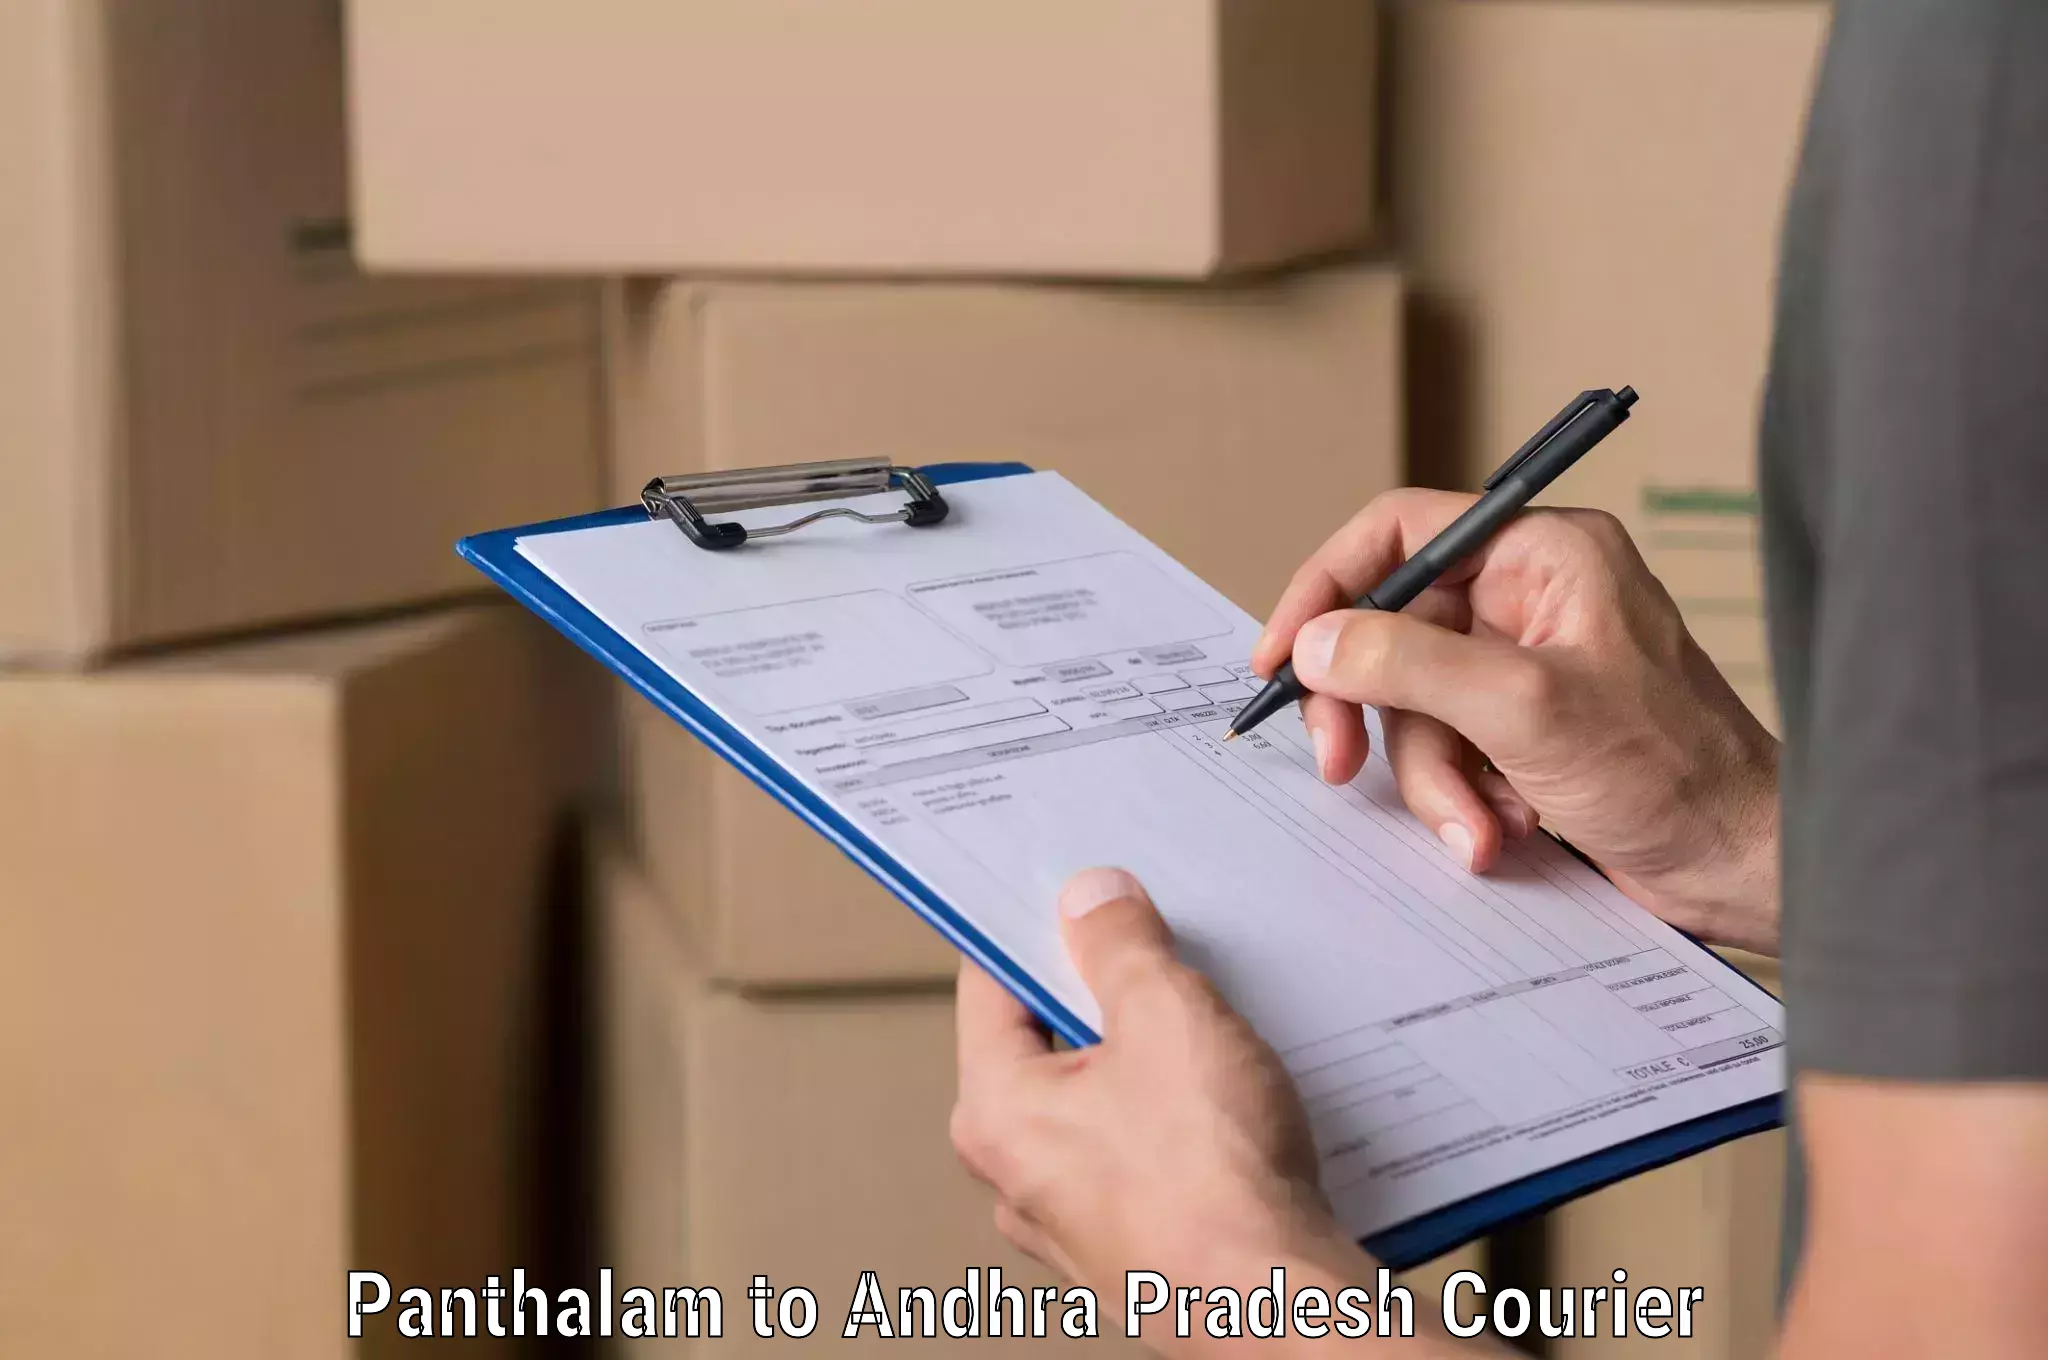 Expedited shipping methods Panthalam to Draksharamam